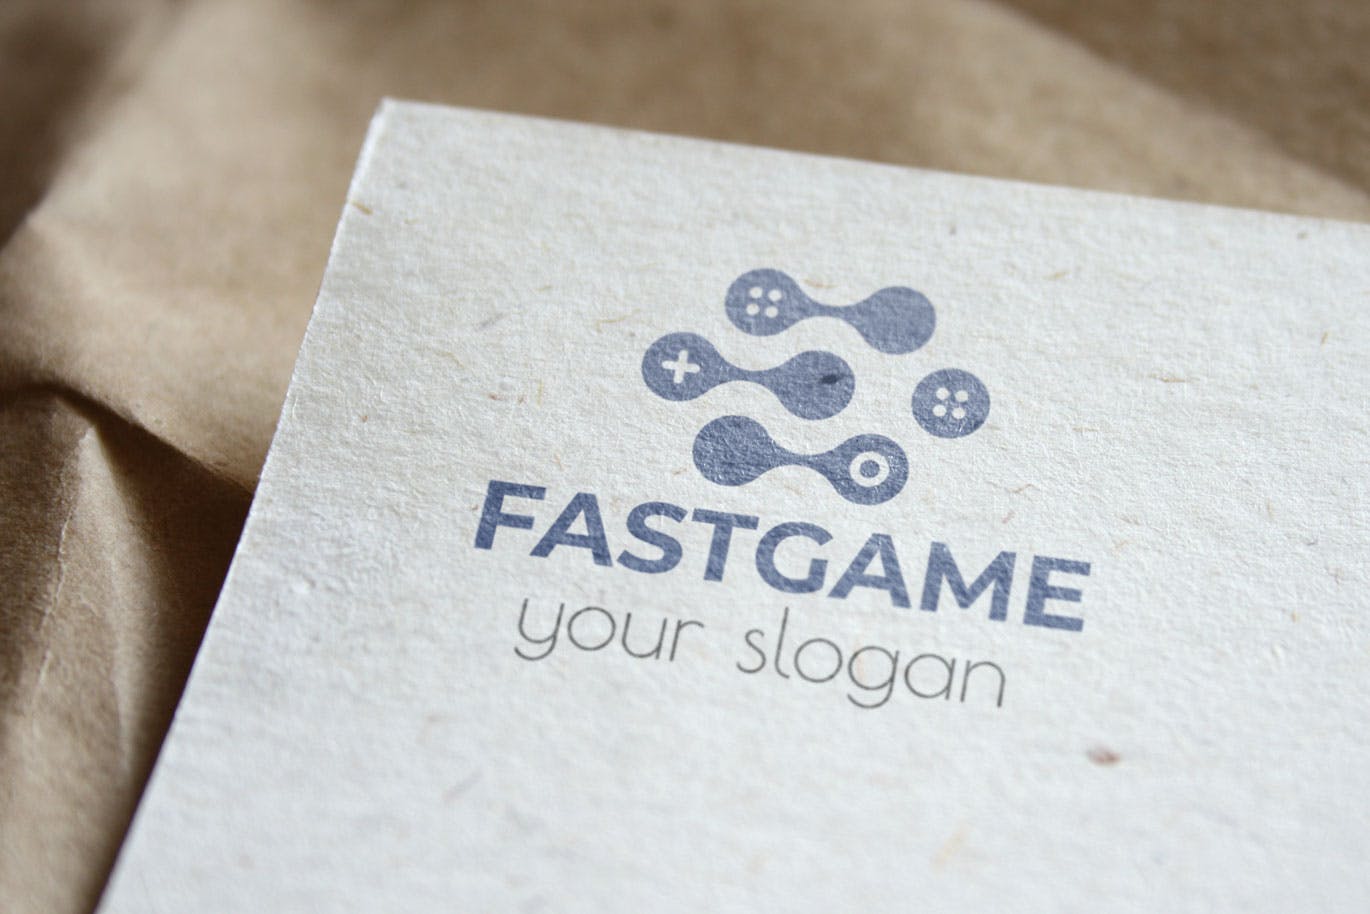 游戏加速器Logo设计第一素材精选模板 Fast Game Business Logo Template插图(3)